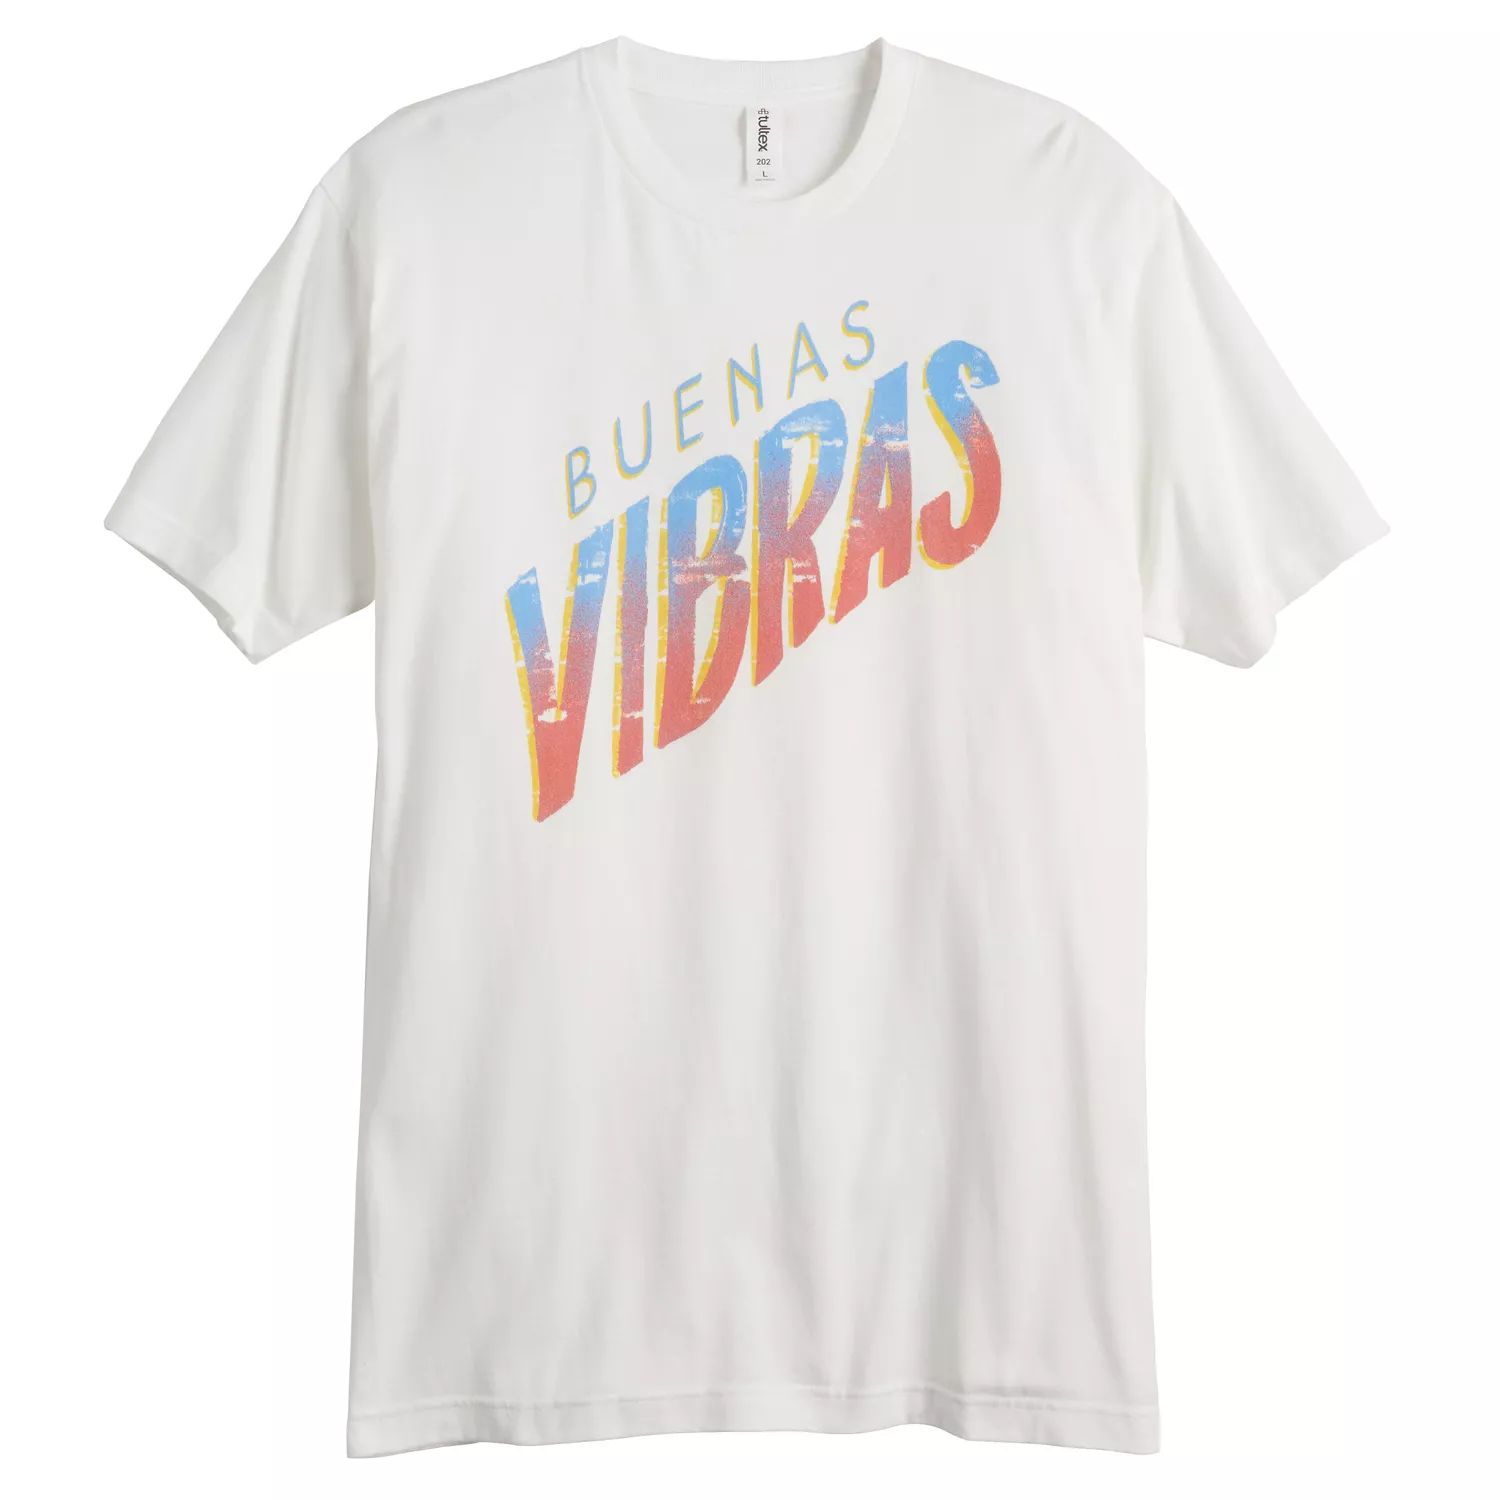 цена Мужская футболка с цветной надписью Gonzales Buenas Vibras Licensed Character